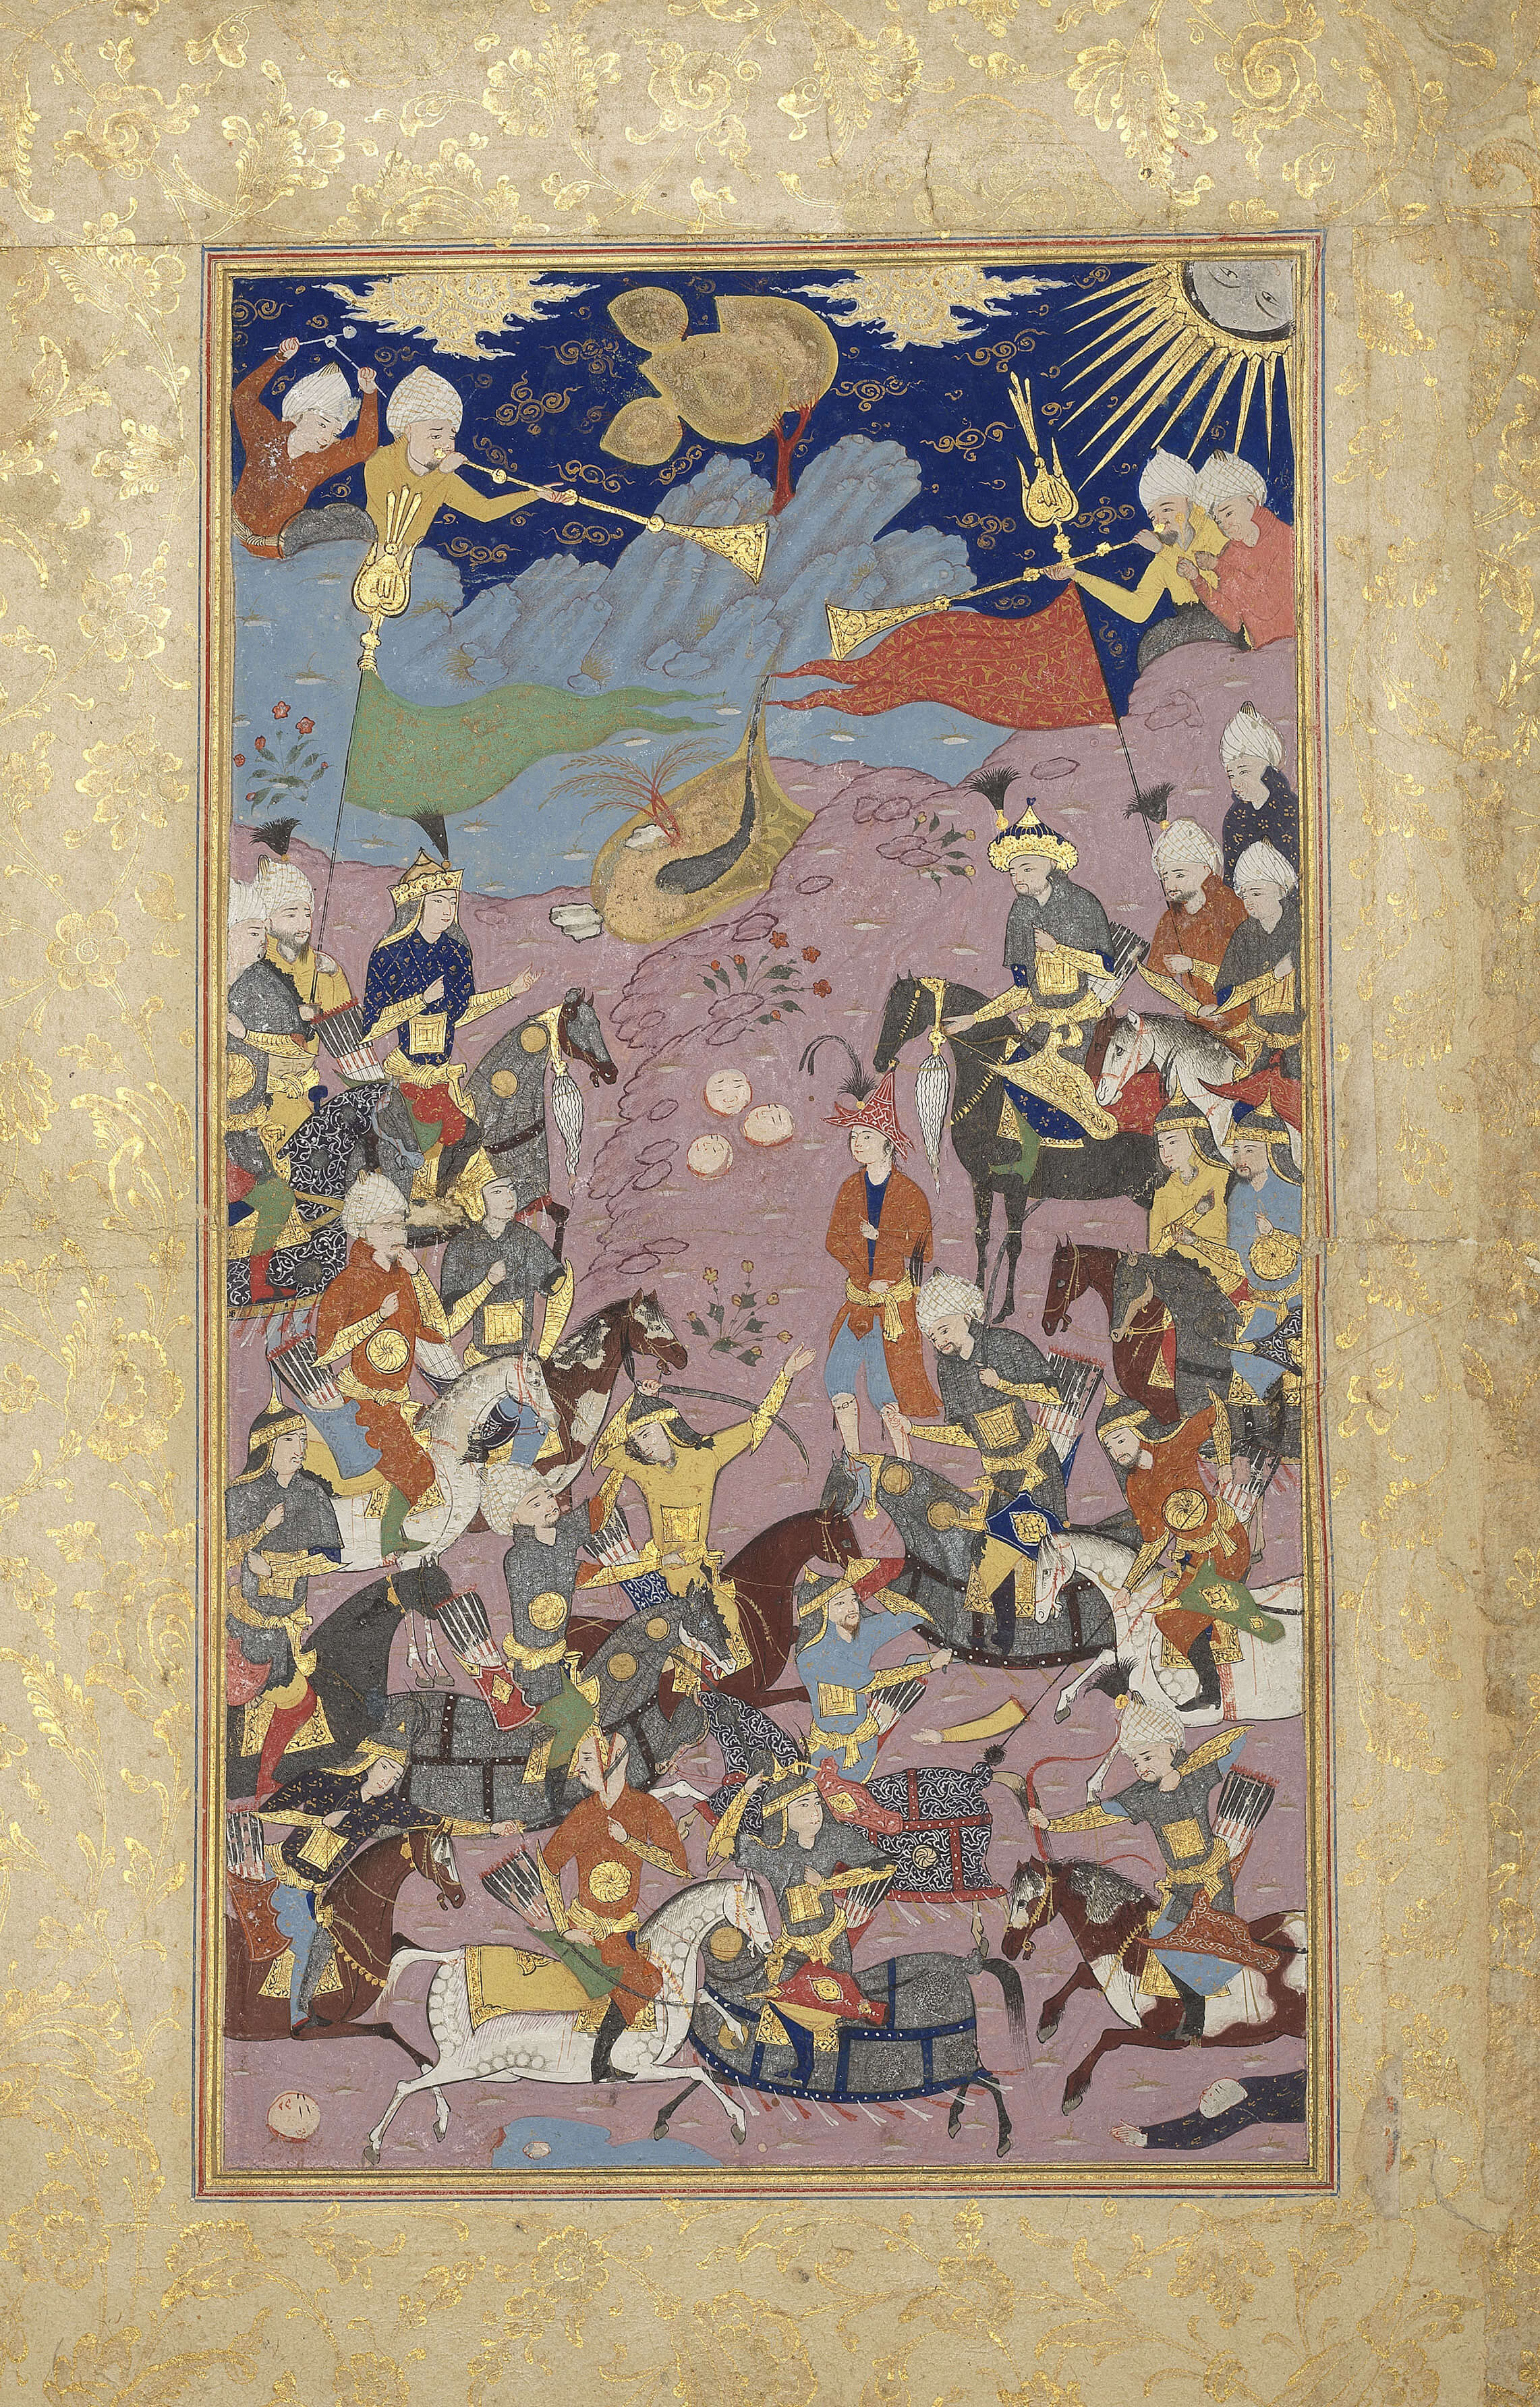 Shah Isma'il defeated the army of the Aq-Qoyunlu